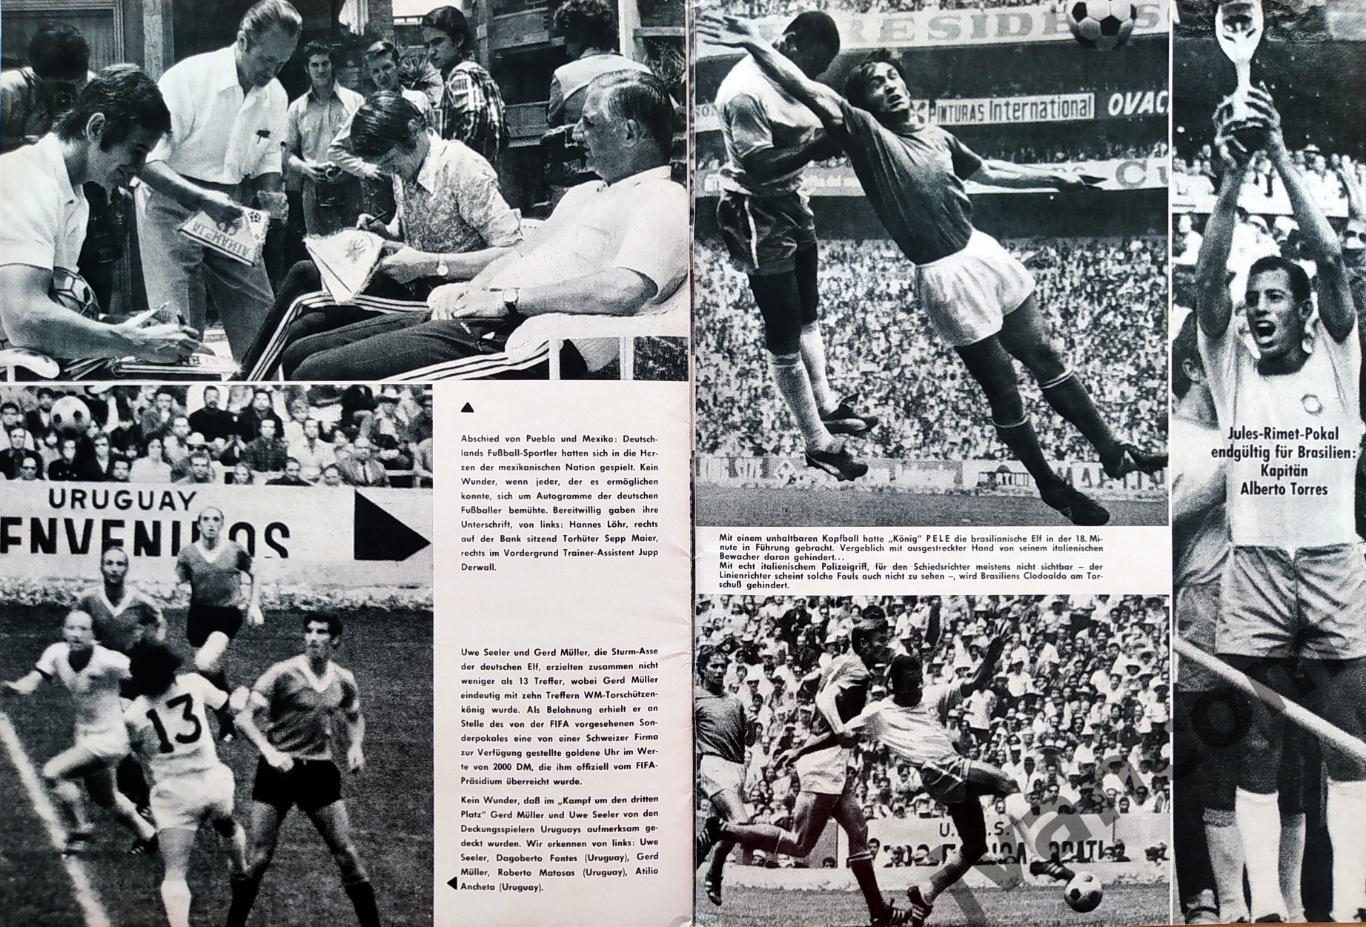 FUSSBALL-1970 Weltmeisterschaft / Чемпионат Мира по футболу в Мексике 1970 года. 7